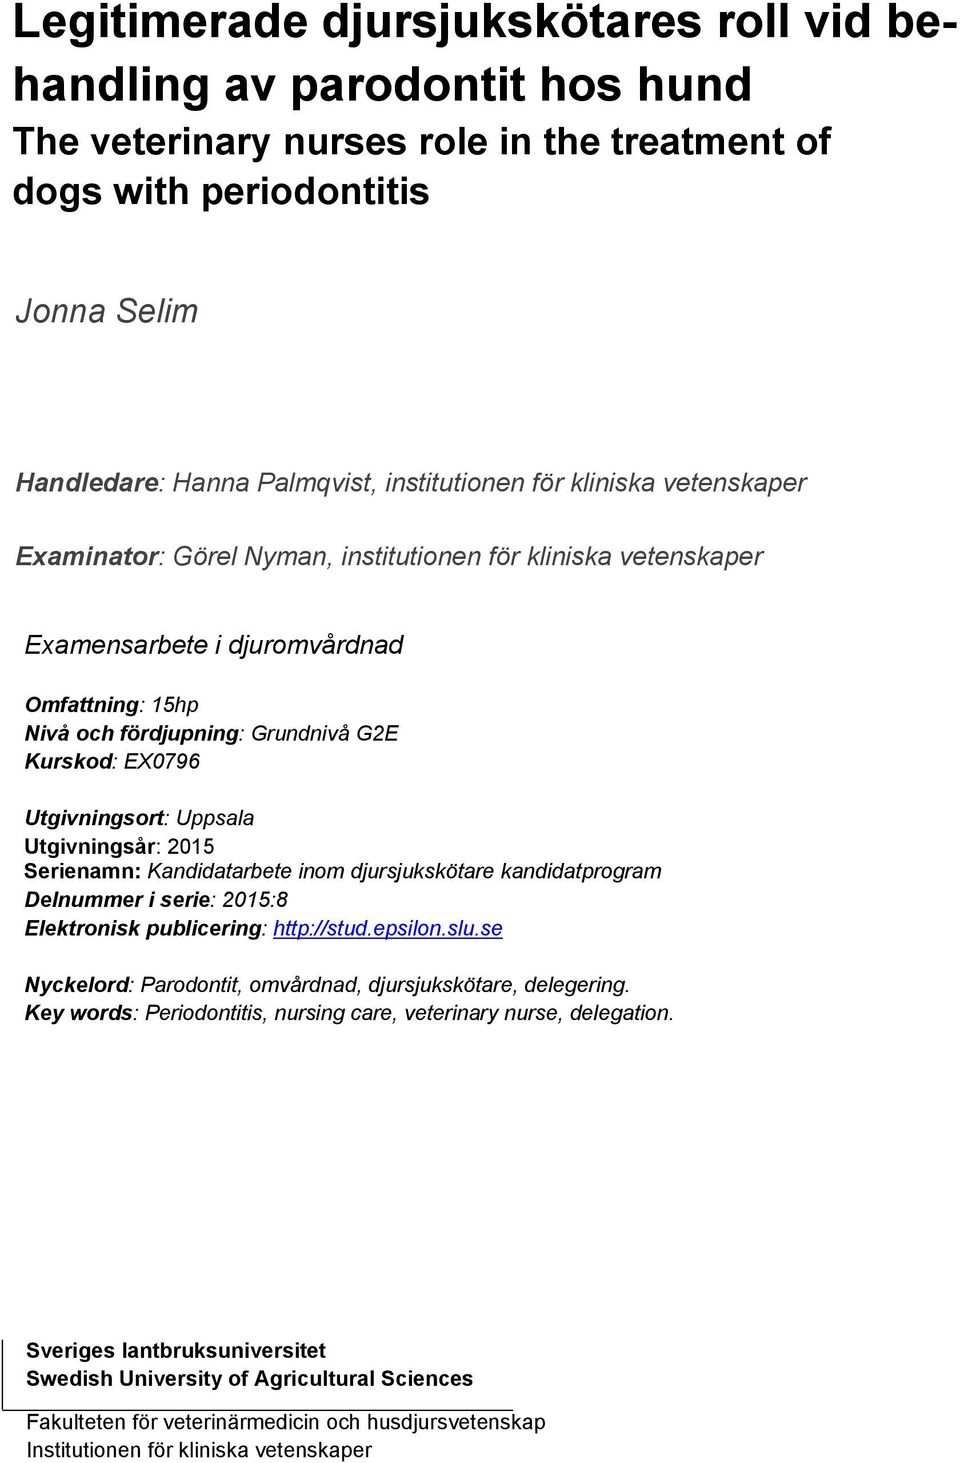 Utgivningsort: Uppsala Utgivningsår: 2015 Serienamn: Kandidatarbete inom djursjukskötare kandidatprogram Delnummer i serie: 2015:8 Elektronisk publicering: http://stud.epsilon.slu.